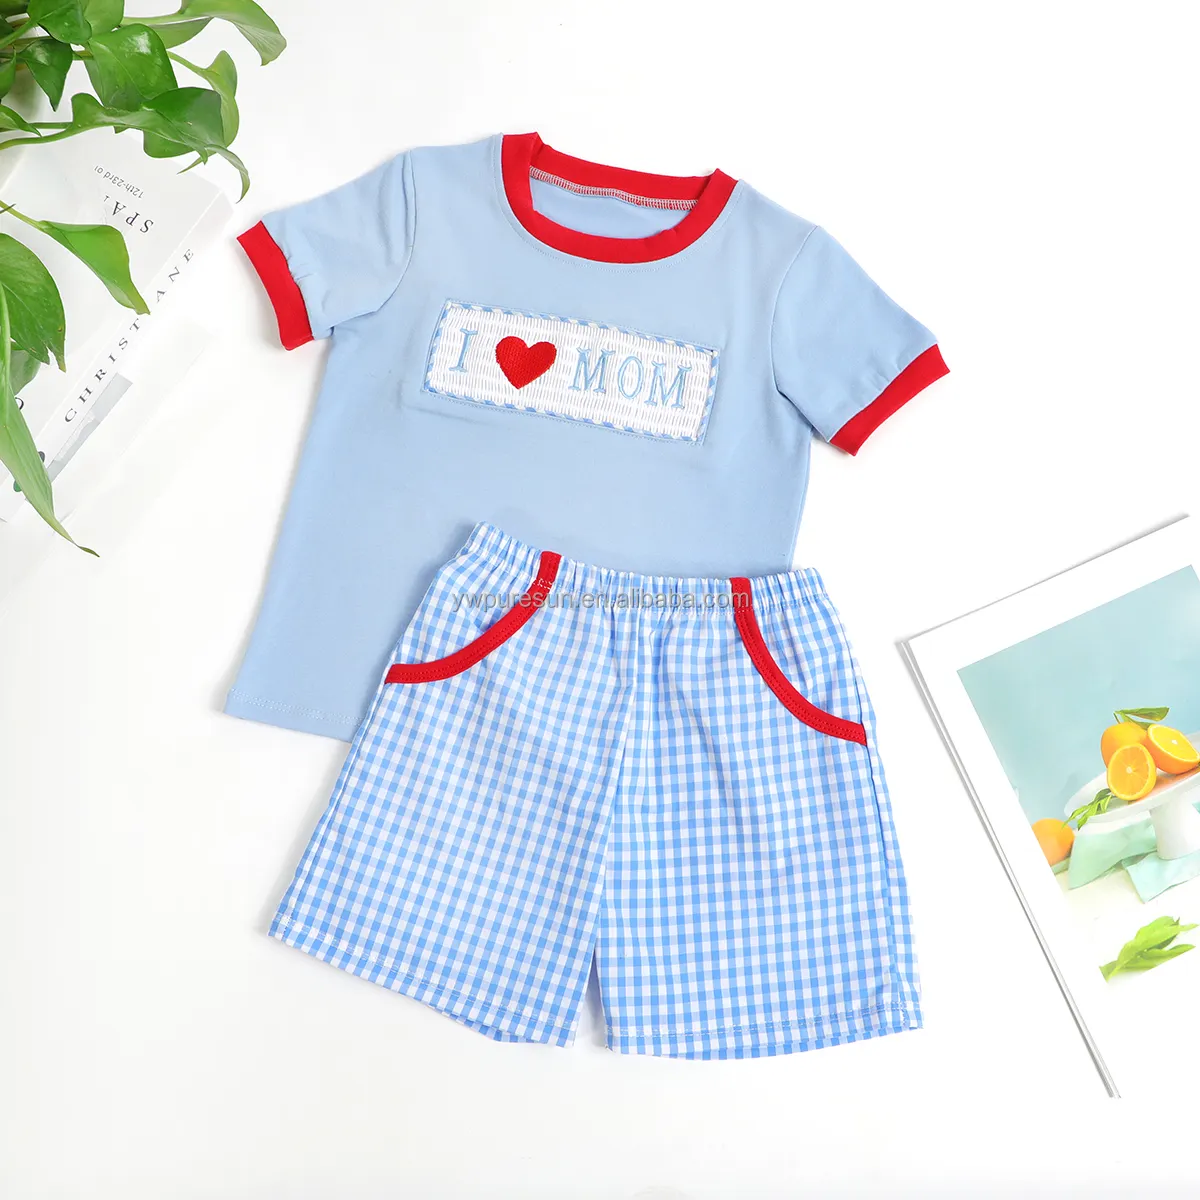 Individuelles Design Smocked-Bekleidungssets für Kinder Ich LIEBE МАМА Stickerei auf Baumwolle Jungs-Bekleidung für Muttertag